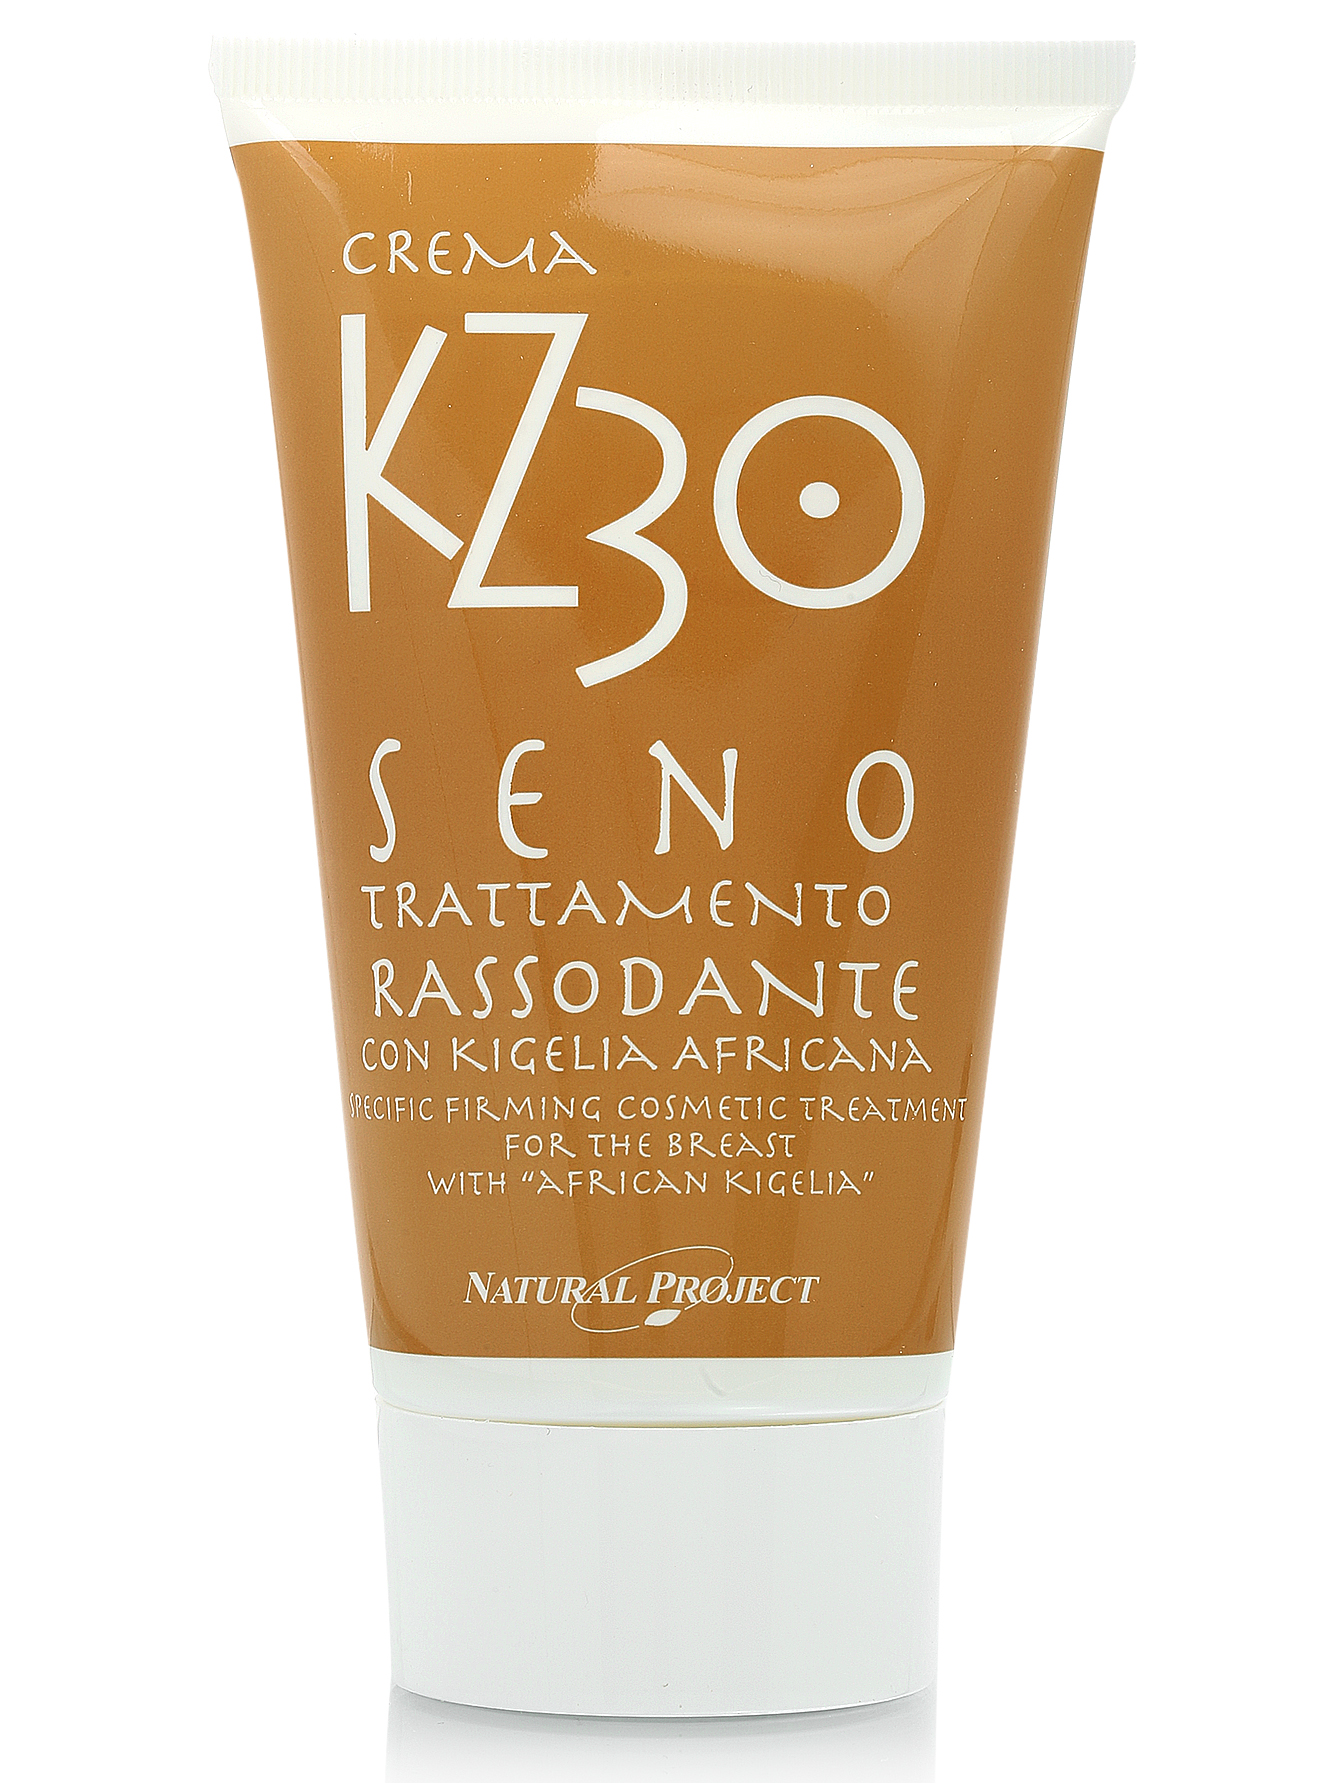  Крем для шеи и декольте "Kz 30 seno crema" - Body Care, 150ml - Общий вид